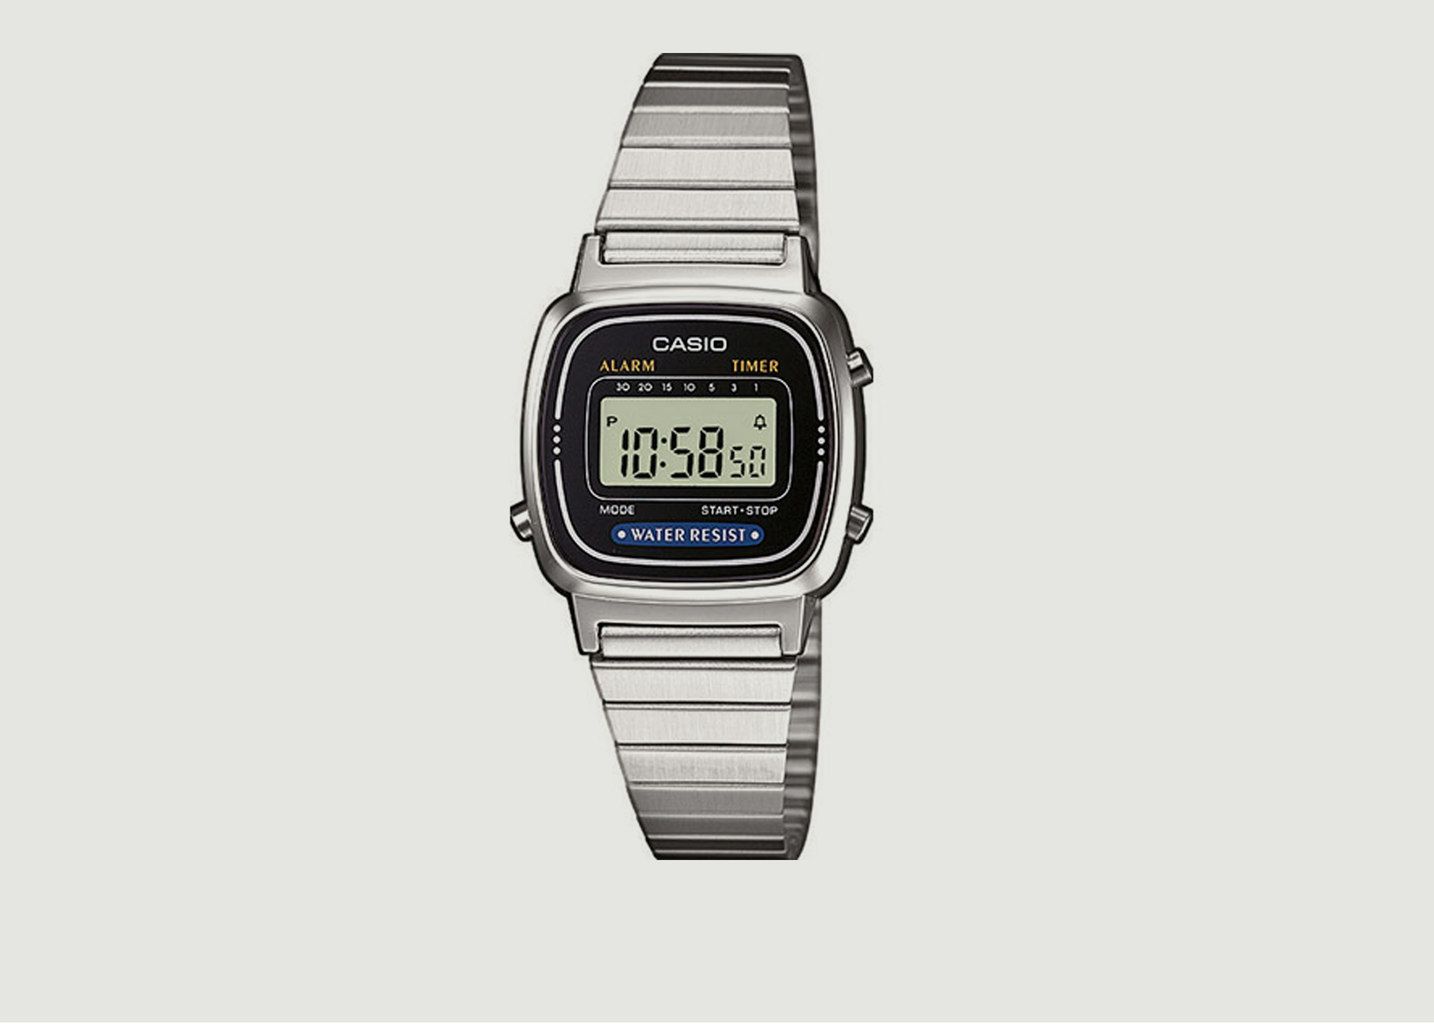 LA670WEA-1EF Casio Vintage Watch - Casio Vintage